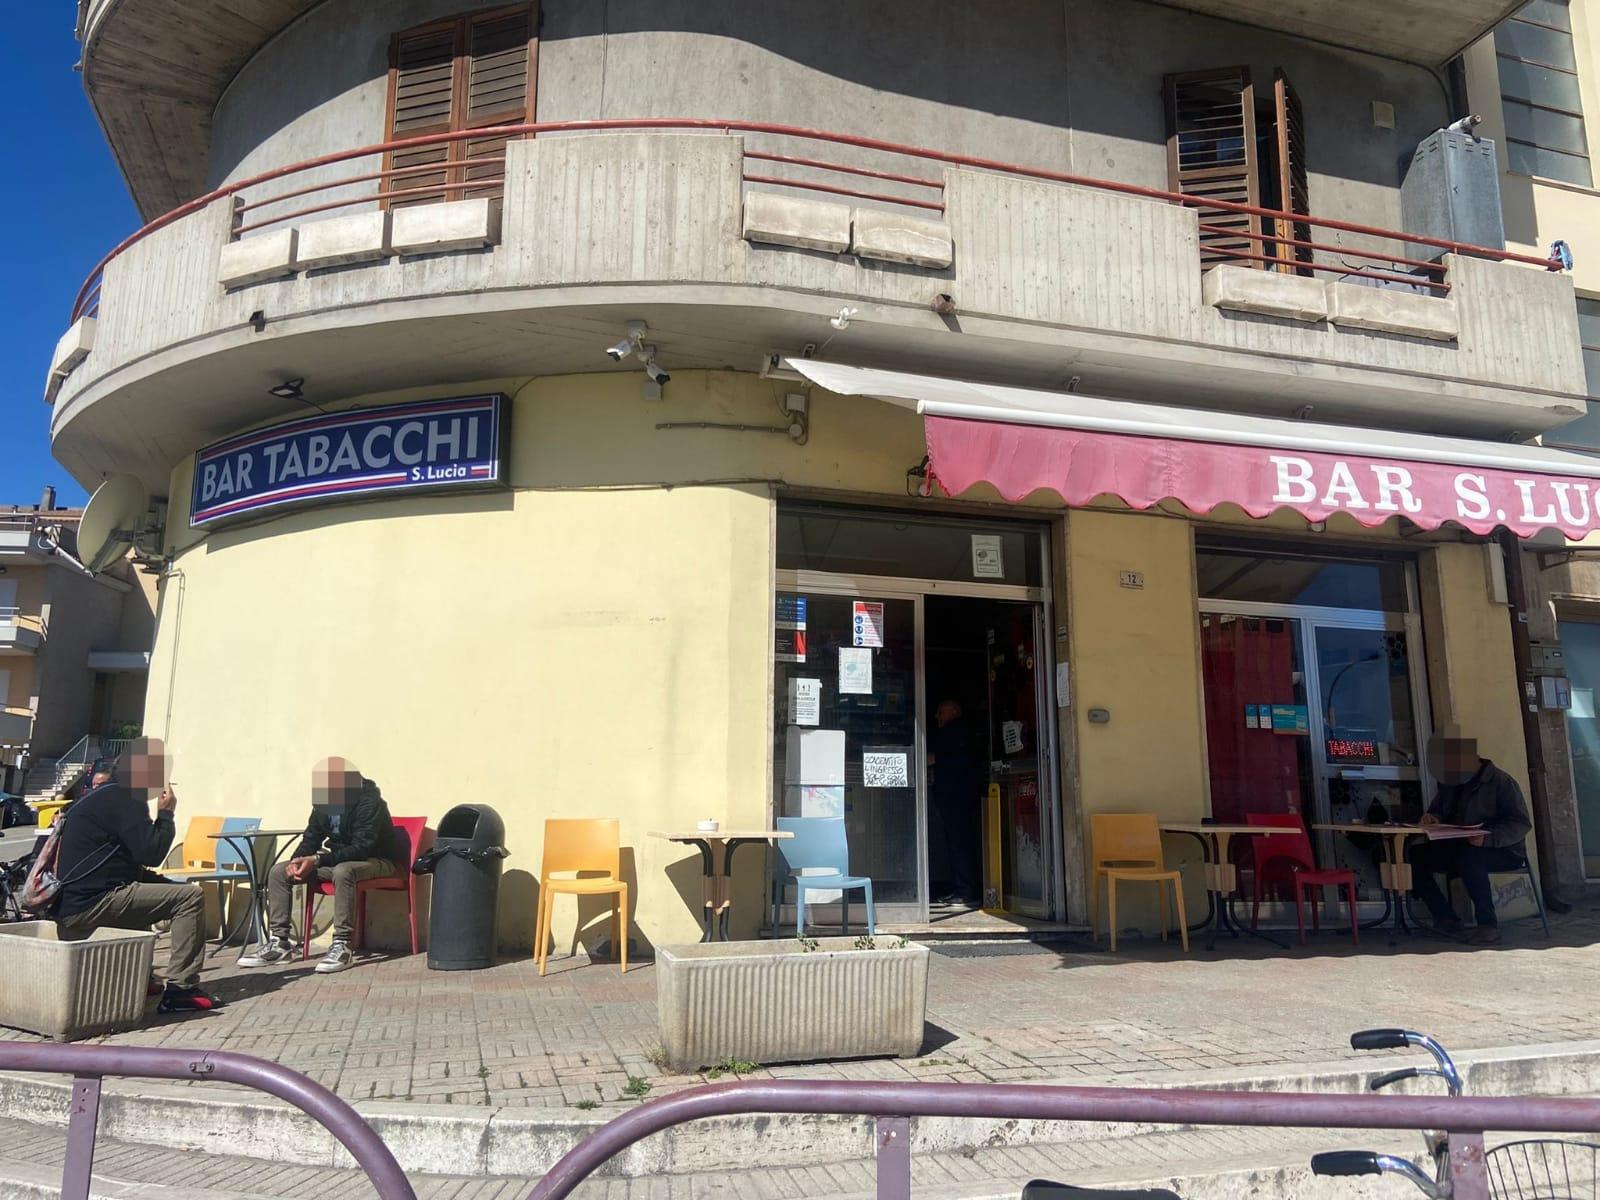 San Benedetto del Tronto – Chiede soldi alla barista e colpisce con una bottiglia di vetro rotta un cliente, arrestato